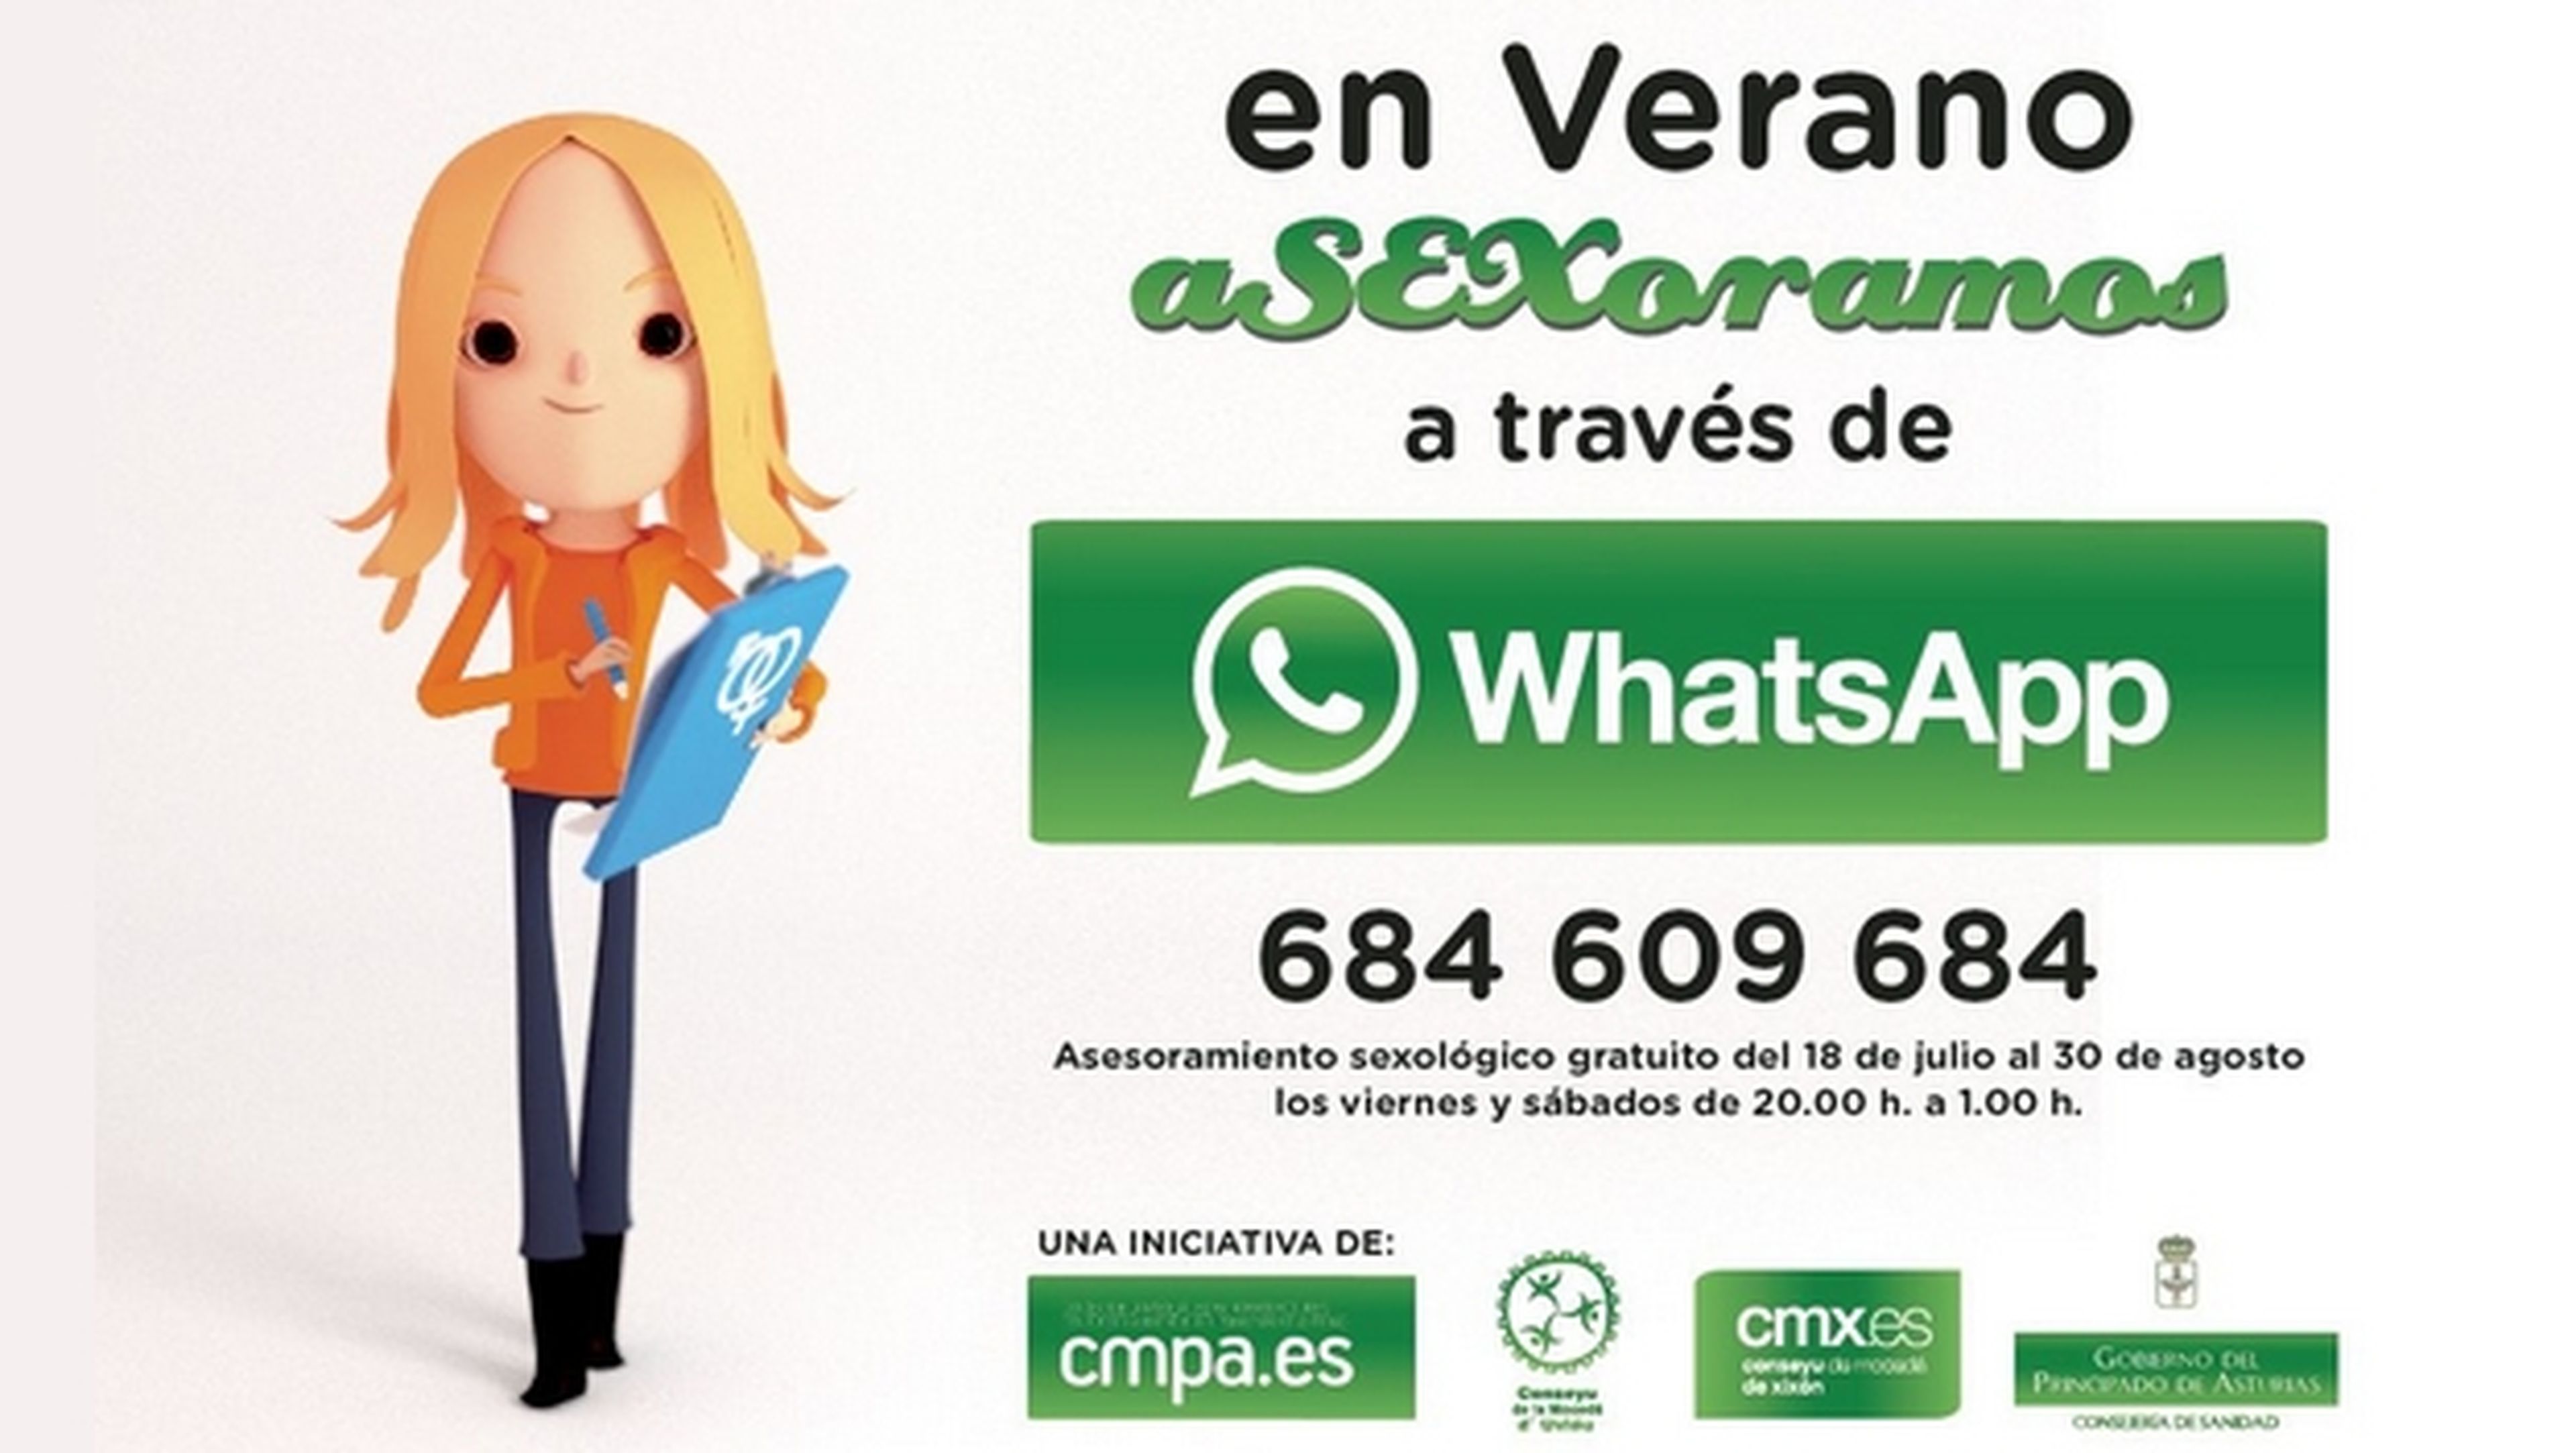 El Consejo de la Juventud del Principado de Asturias ha puesto en marcha la campaña En Verano aSEXoramos por WhatsApp, un consultorio sexual por WhatsApp, enfocado a los jóvenes.